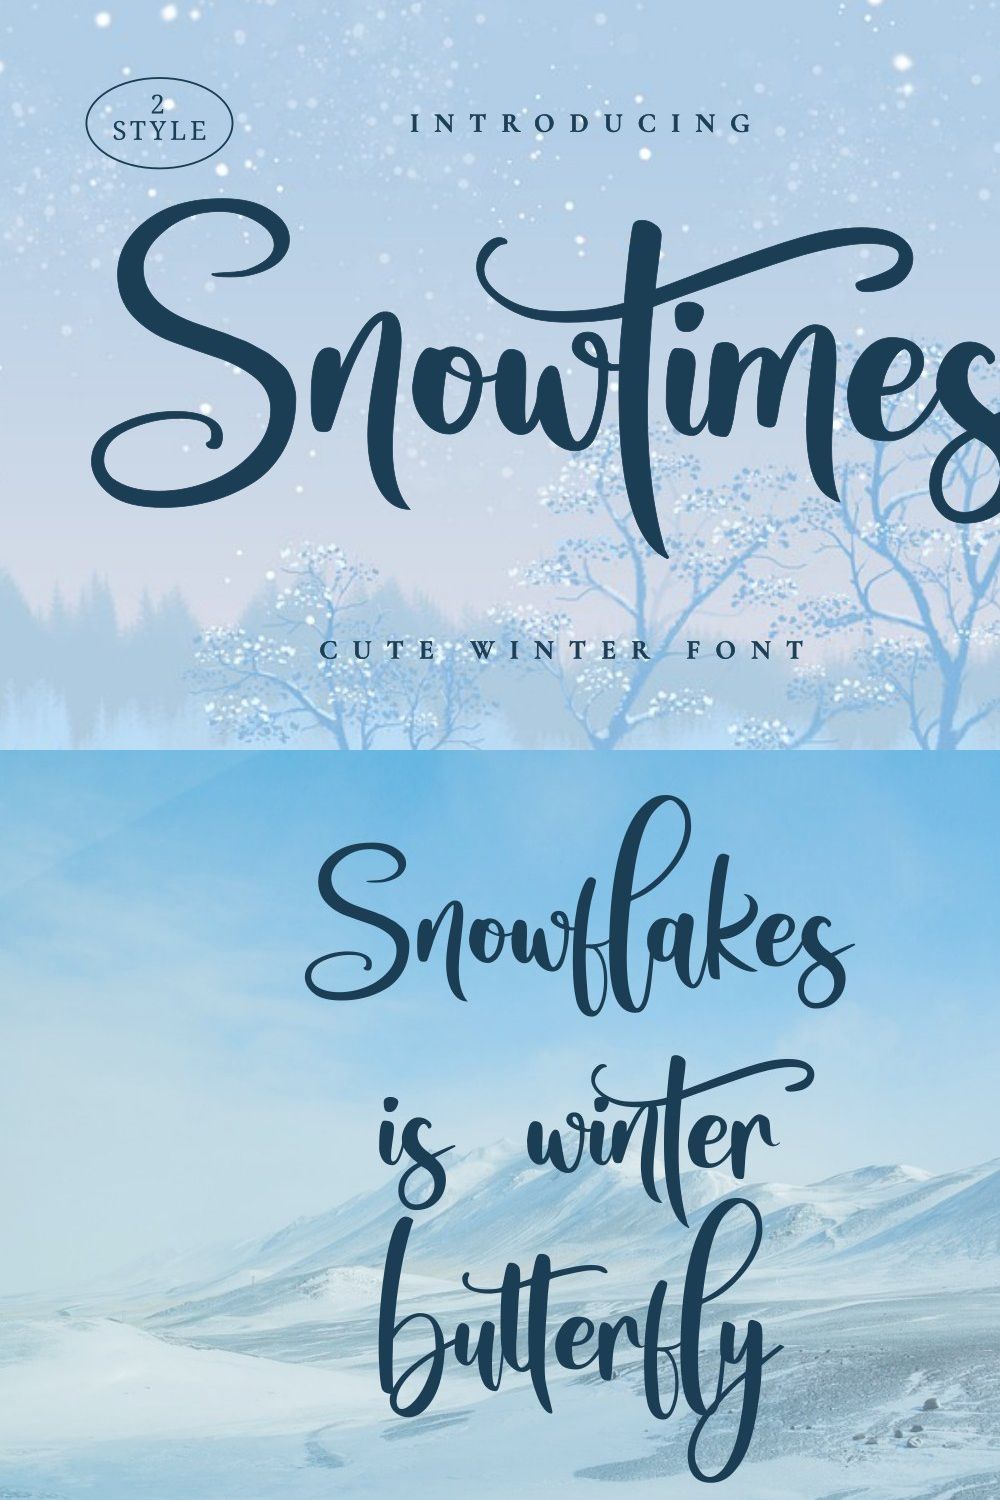 Snowtimes | A Bouncy Handwritten pinterest preview image.